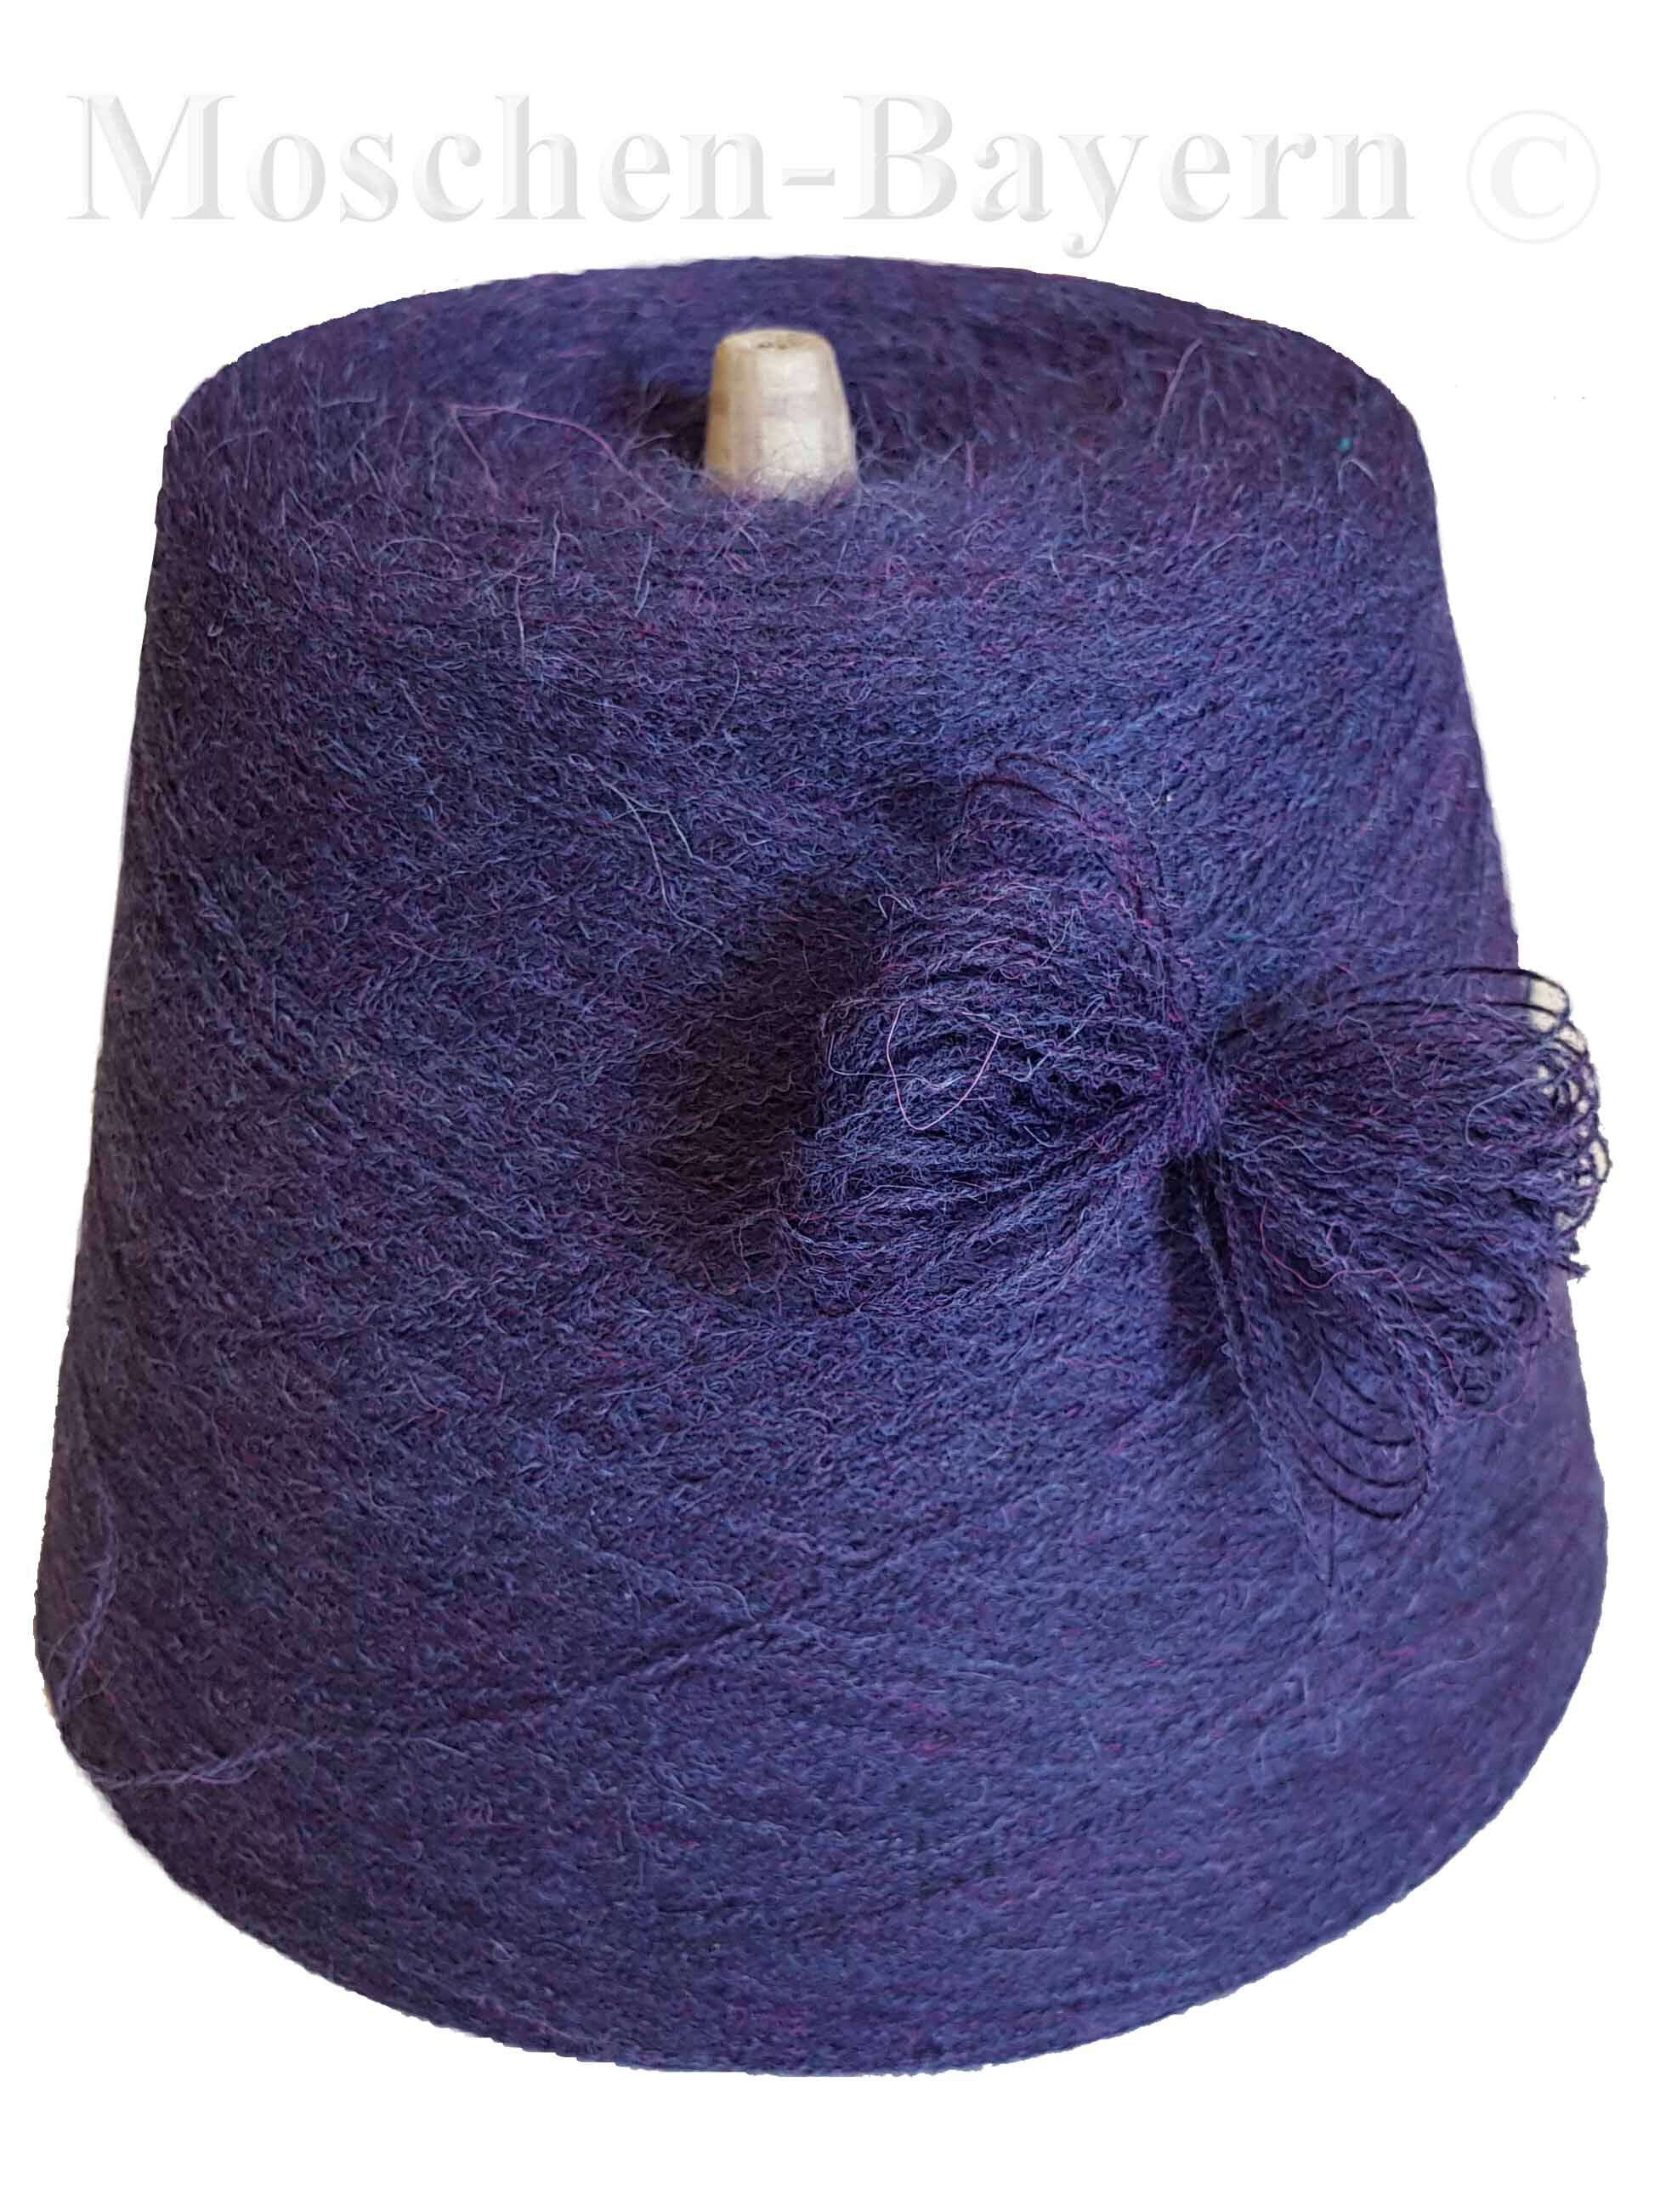 PREMIUM MOHAIR/SCHURWOLLE/Mix - STRICKWOLLE - 1 Konen/800 Gramm Violett-Blau